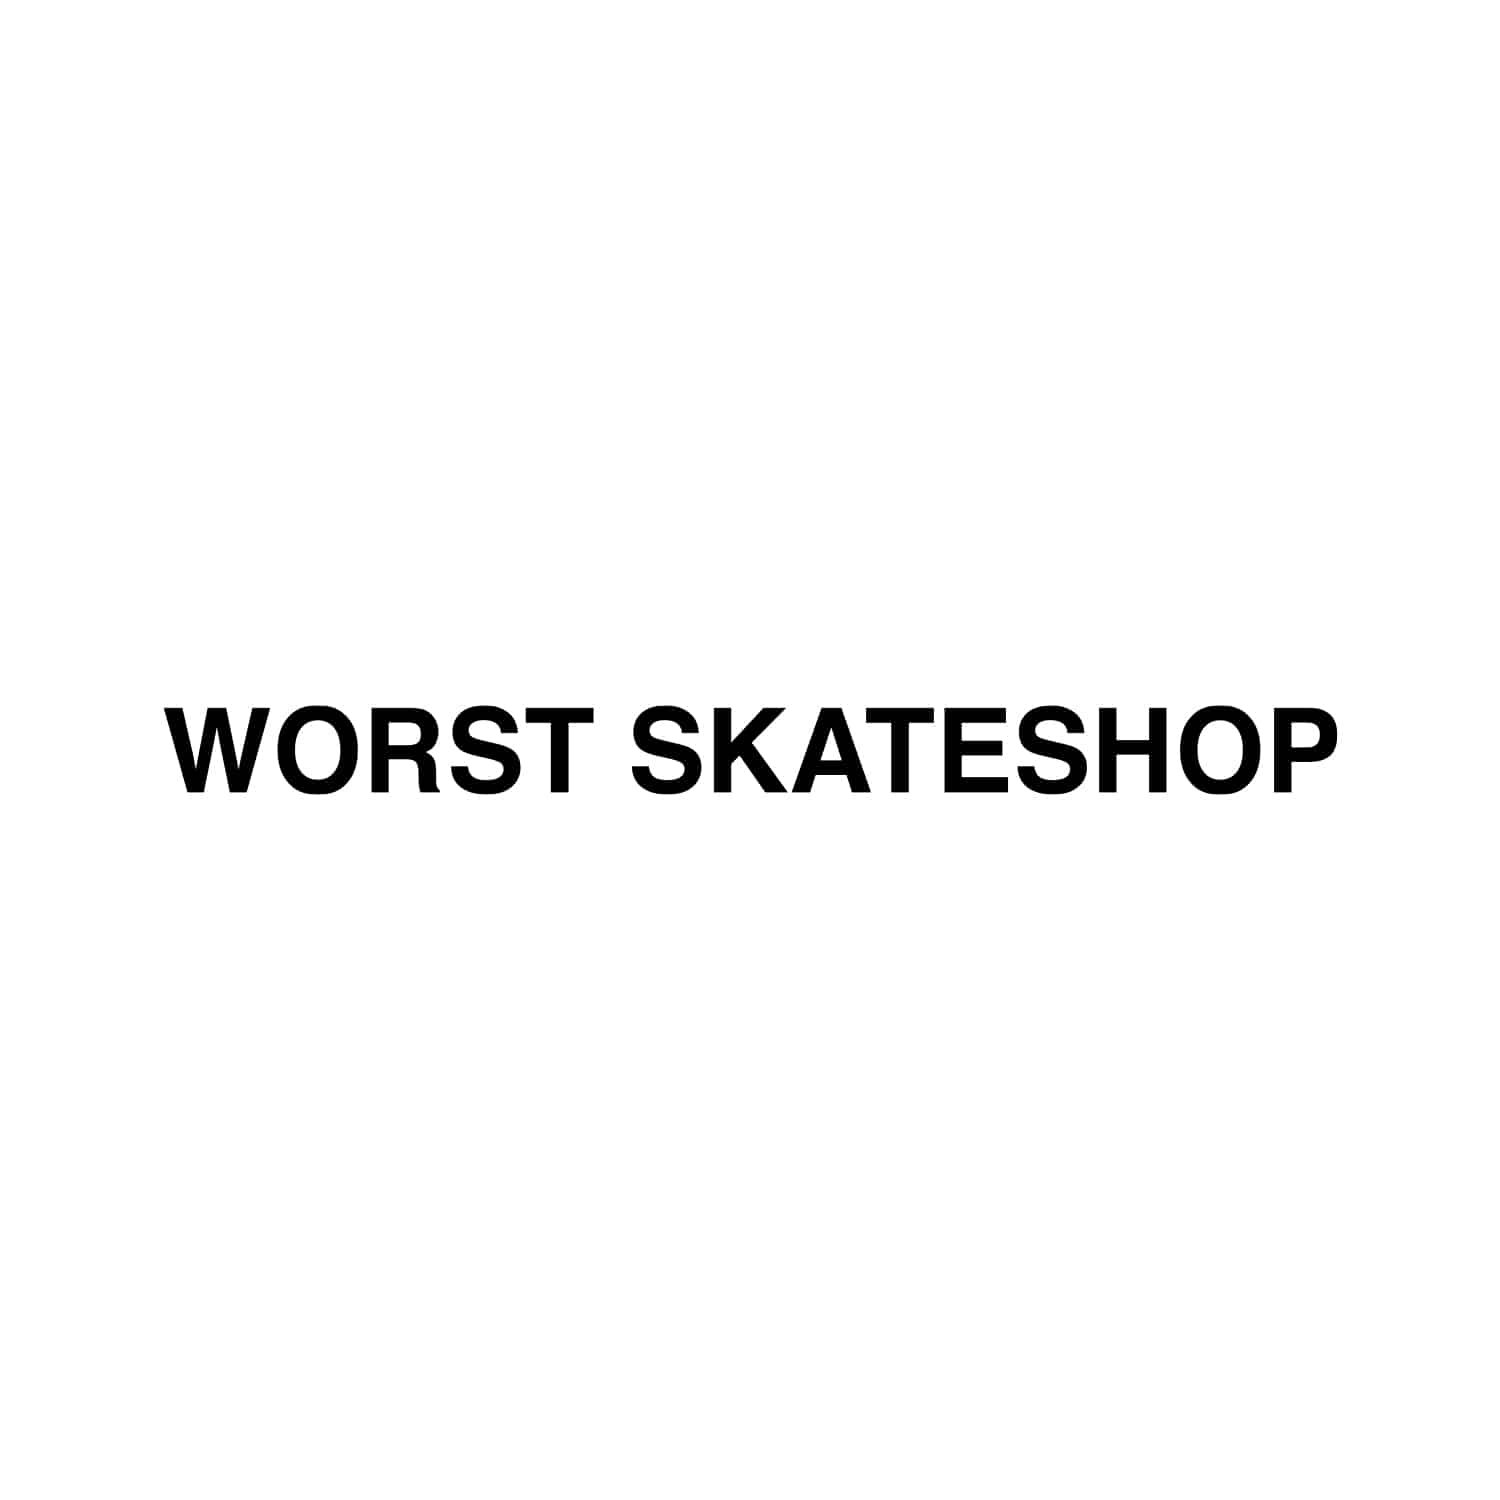 09. Worst Skateshop